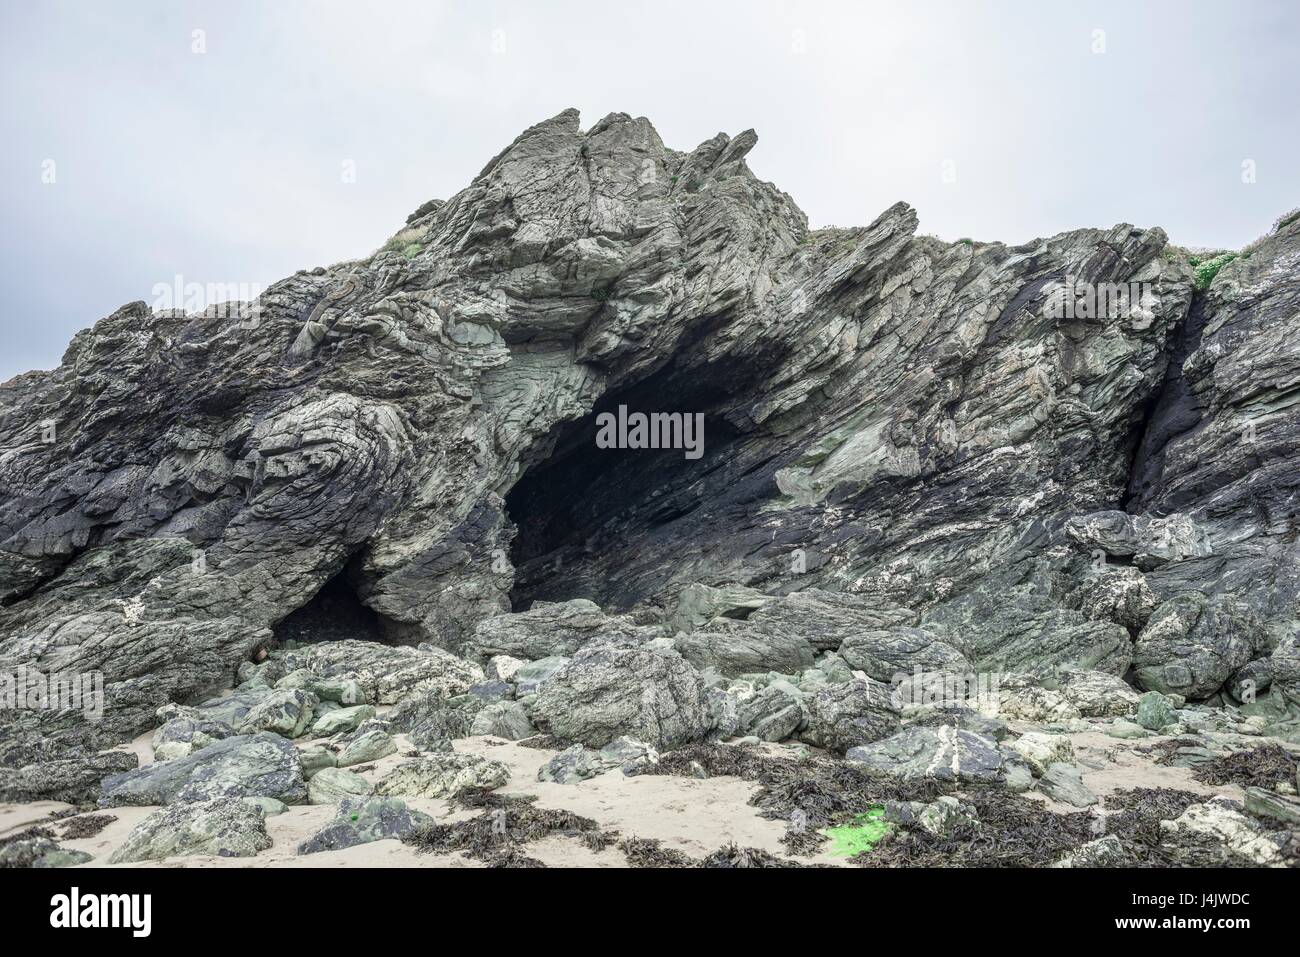 Gefalteten Rock rock Schichten und Höhle Porth Dafarch, Anglesey, Wales, UK. Es wird gebildet aus Schiefer, mit Ursprung als Feinkohlen und muds auf einem Meeresboden vor 600 Millionen Jahren. Später war tief begraben, gequetscht und erhitzt, um Temperaturen von 500 Grad Celsiu Stockfoto